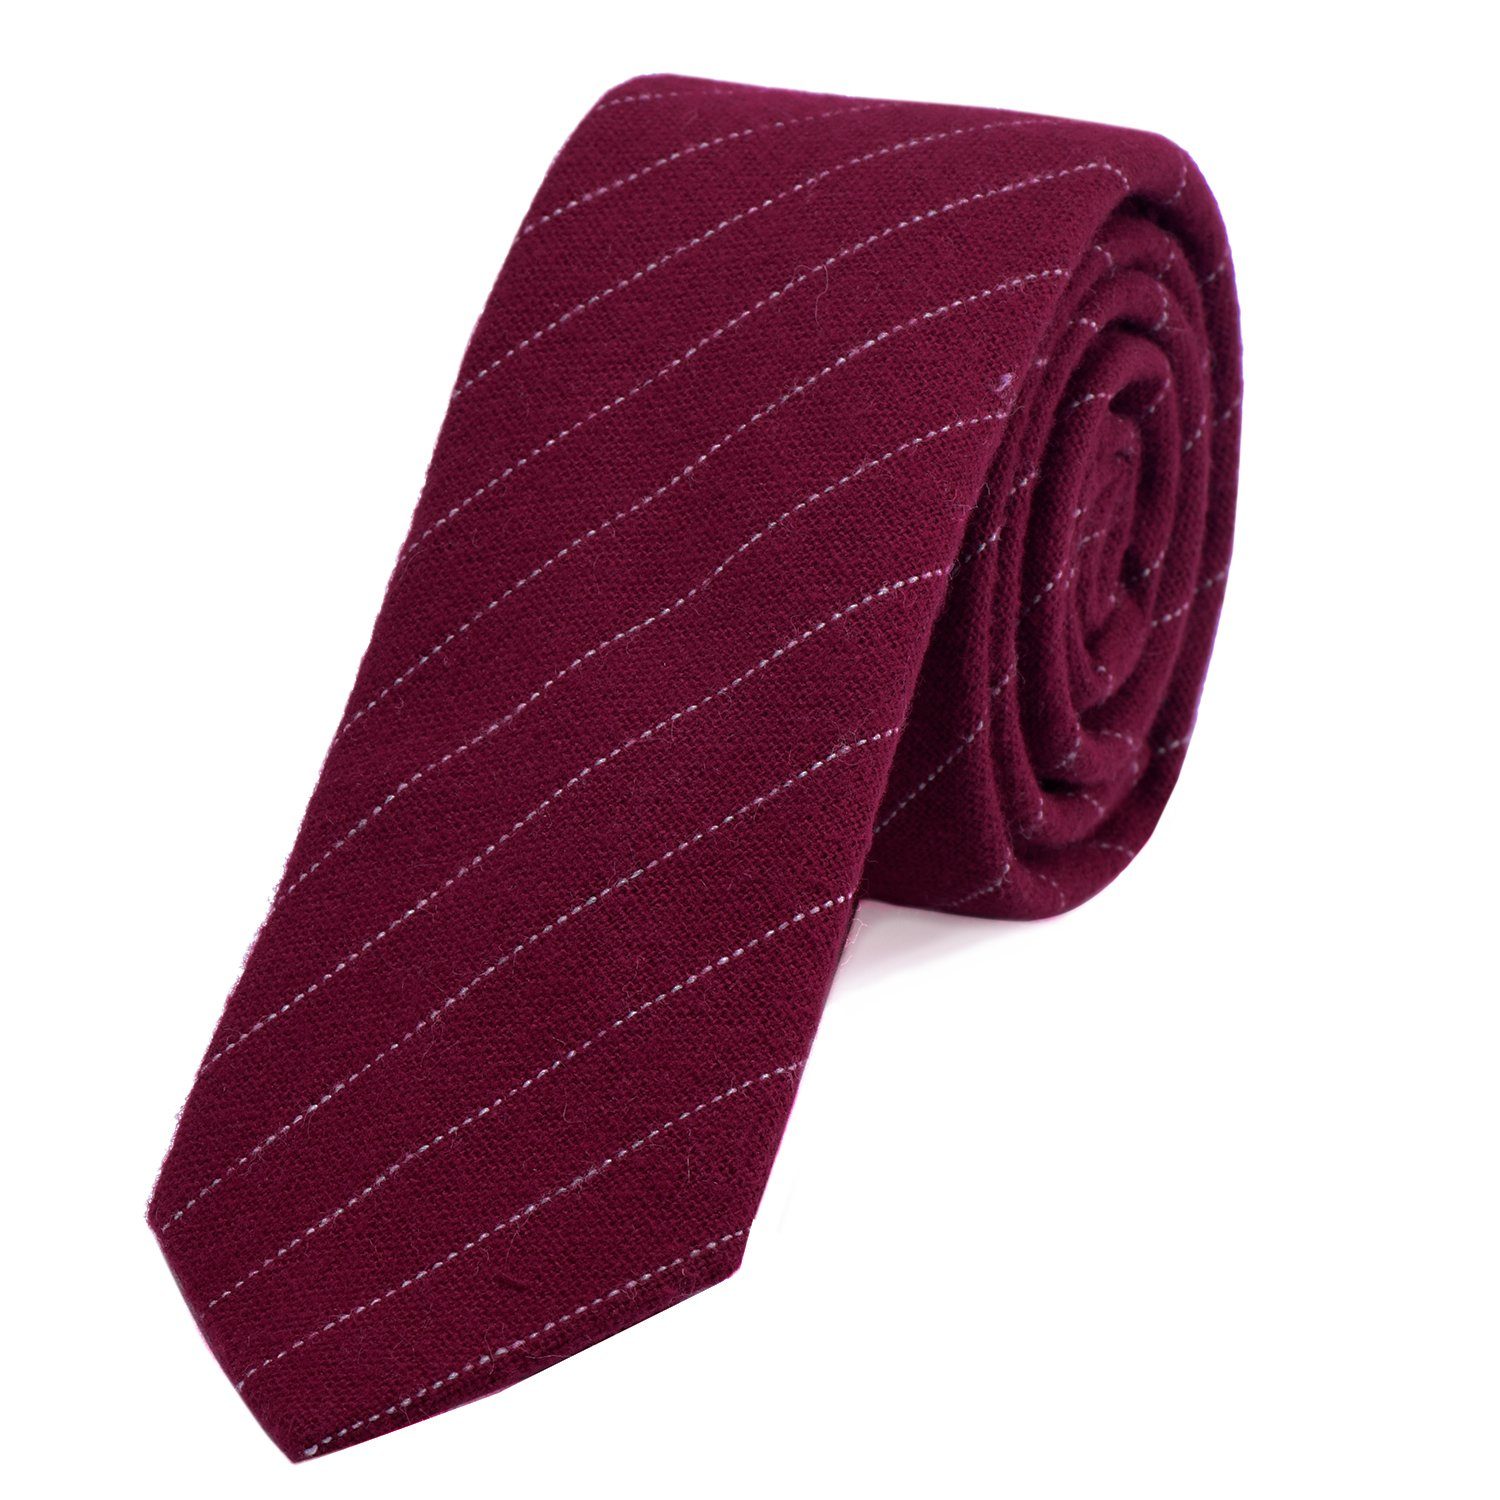 DonDon Krawatte Herren Krawatte 6 cm mit Karos oder Streifen (Packung, 1-St., 1x Krawatte) Baumwolle, kariert oder gestreift, für Büro oder festliche Veranstaltungen bordeauxrot gestreift | Breite Krawatten